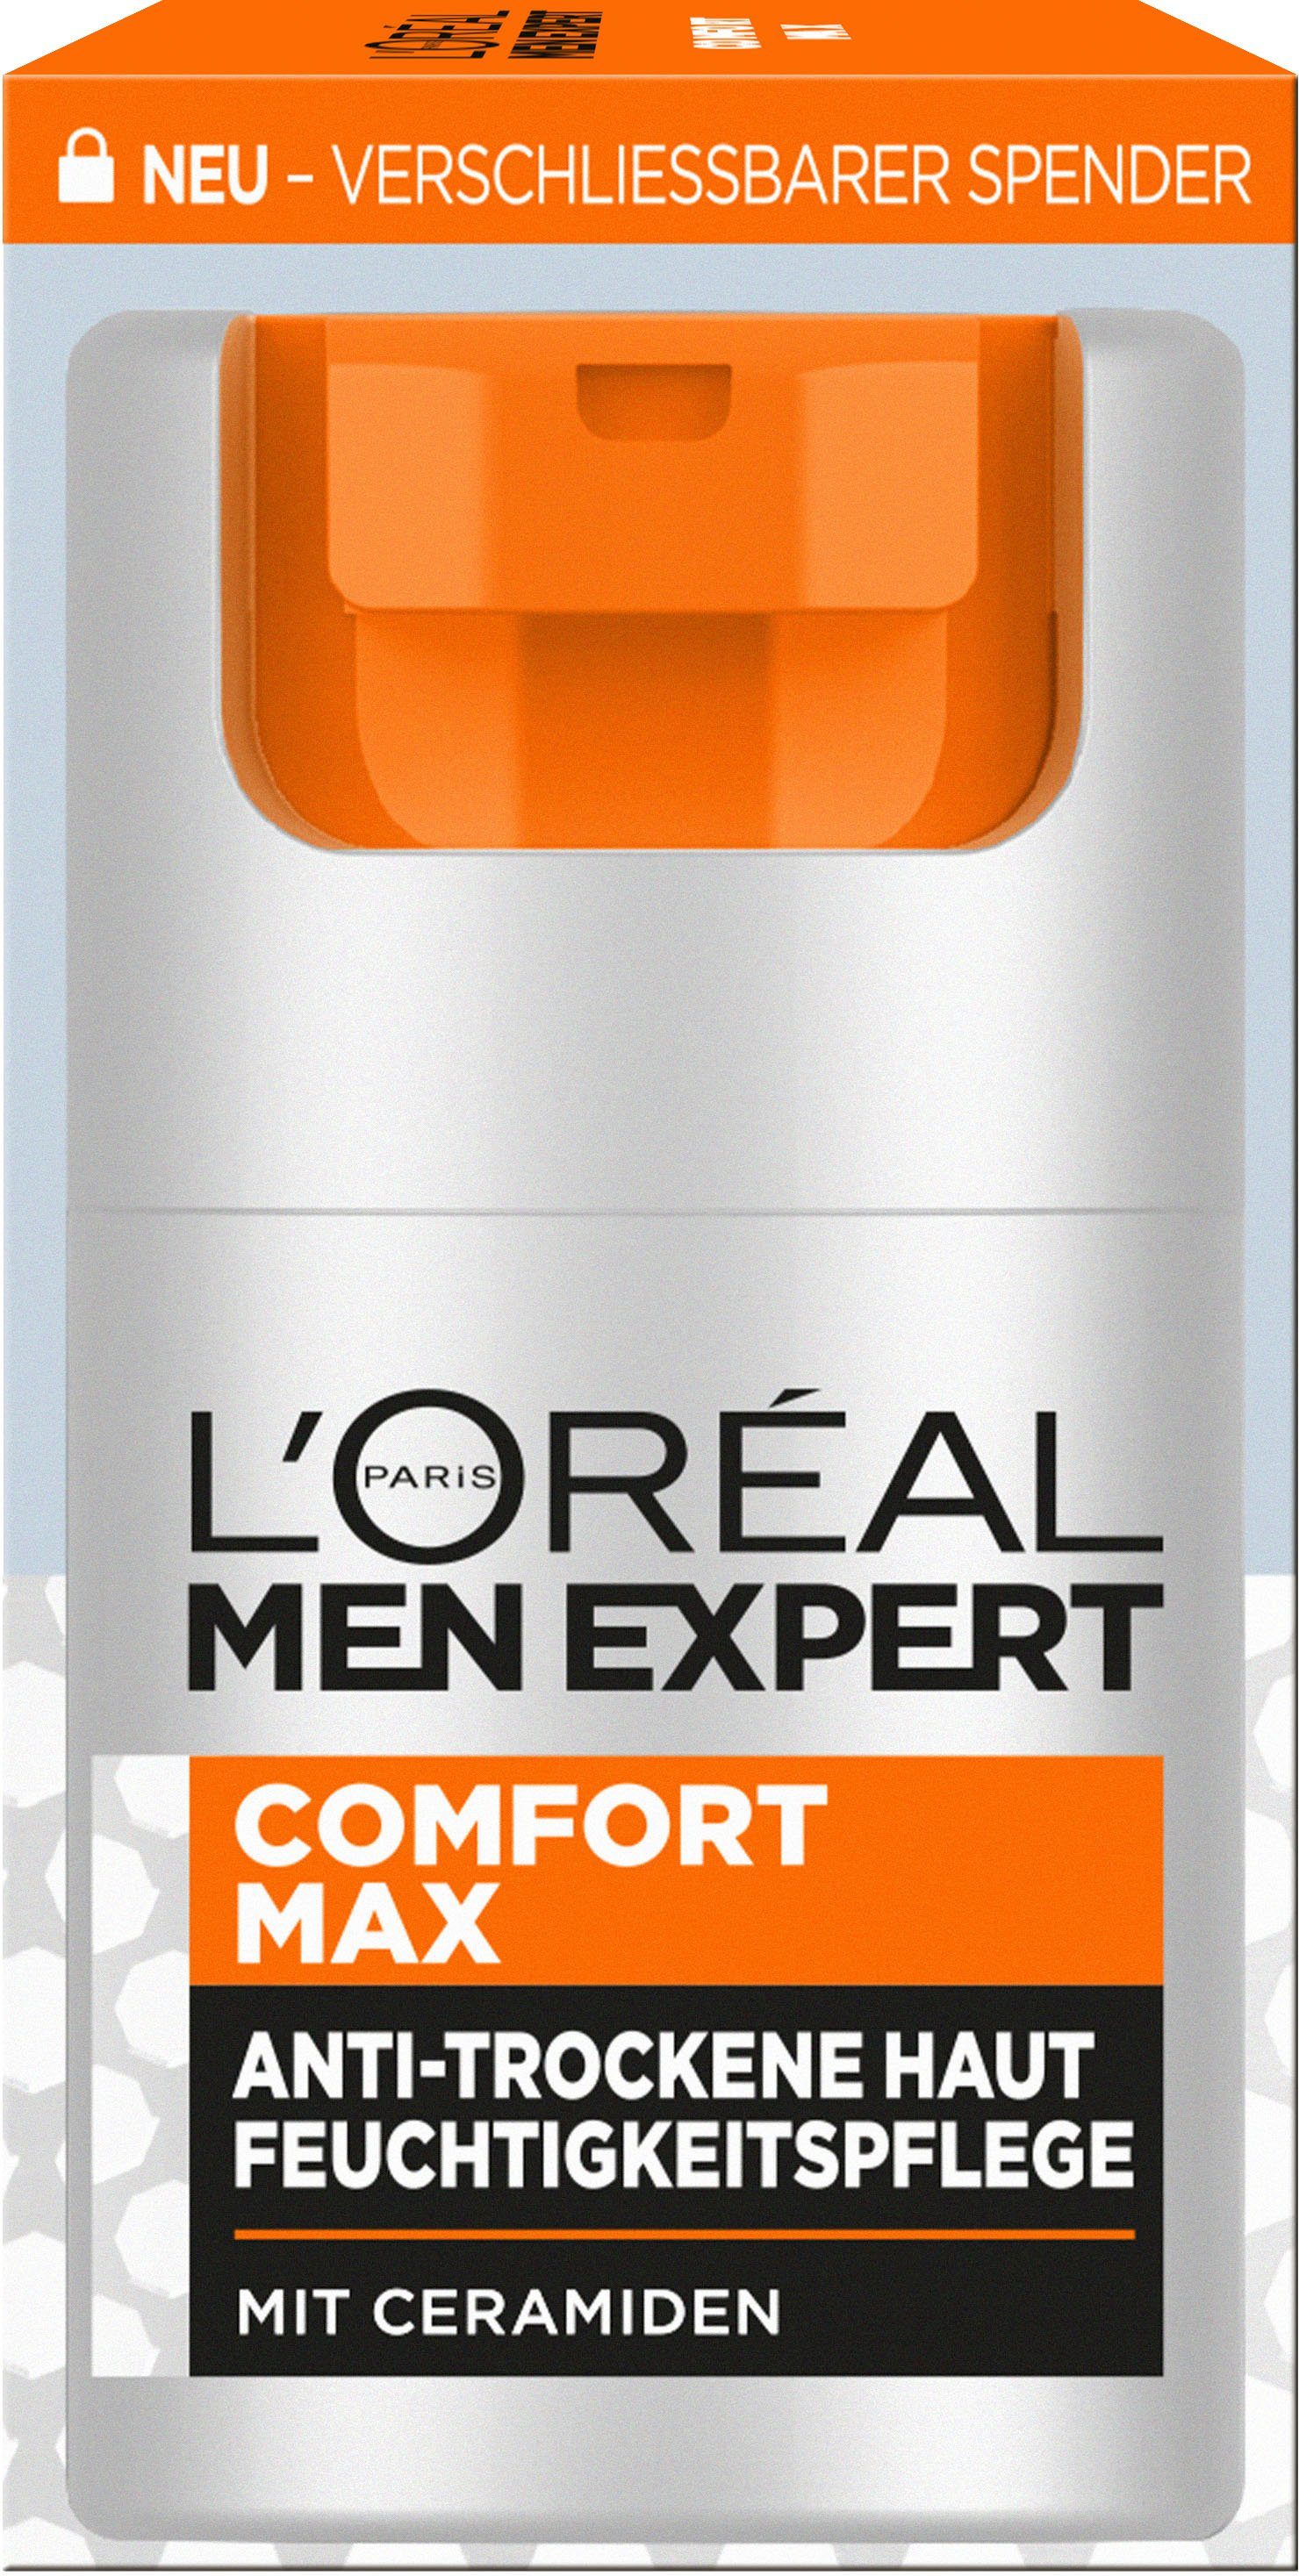 Men Feuchtigkeitspflege Expert Gesichtsgel Max PARIS EXPERT L'ORÉAL L'Oréal Comfort MEN